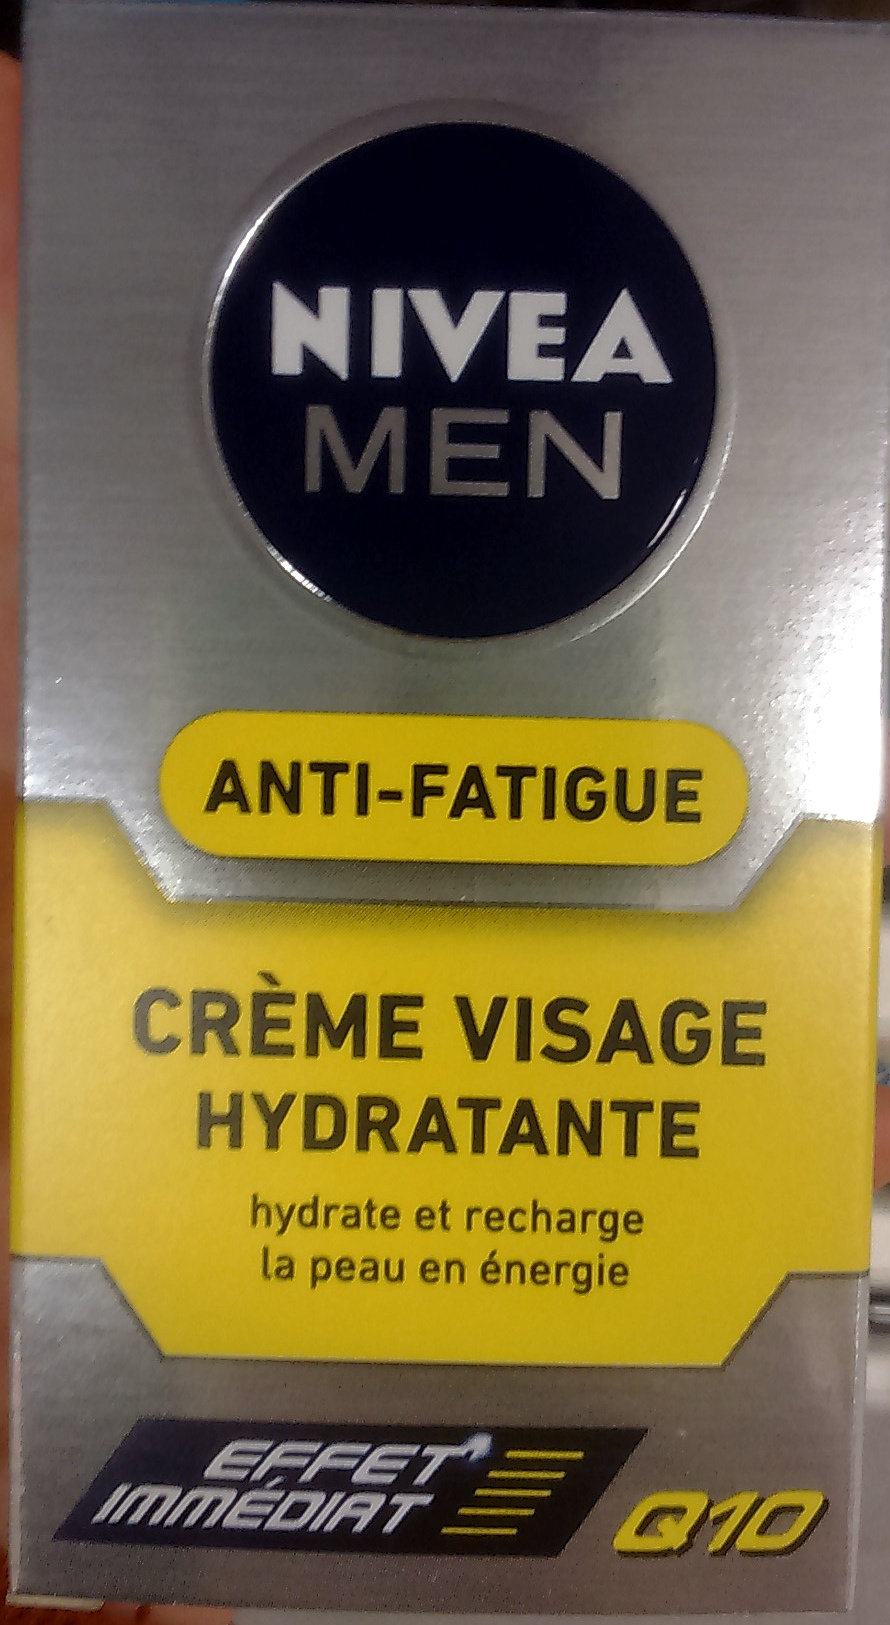 Anti-Fatigue Crème visage hydratante Effet immédiat - Product - fr